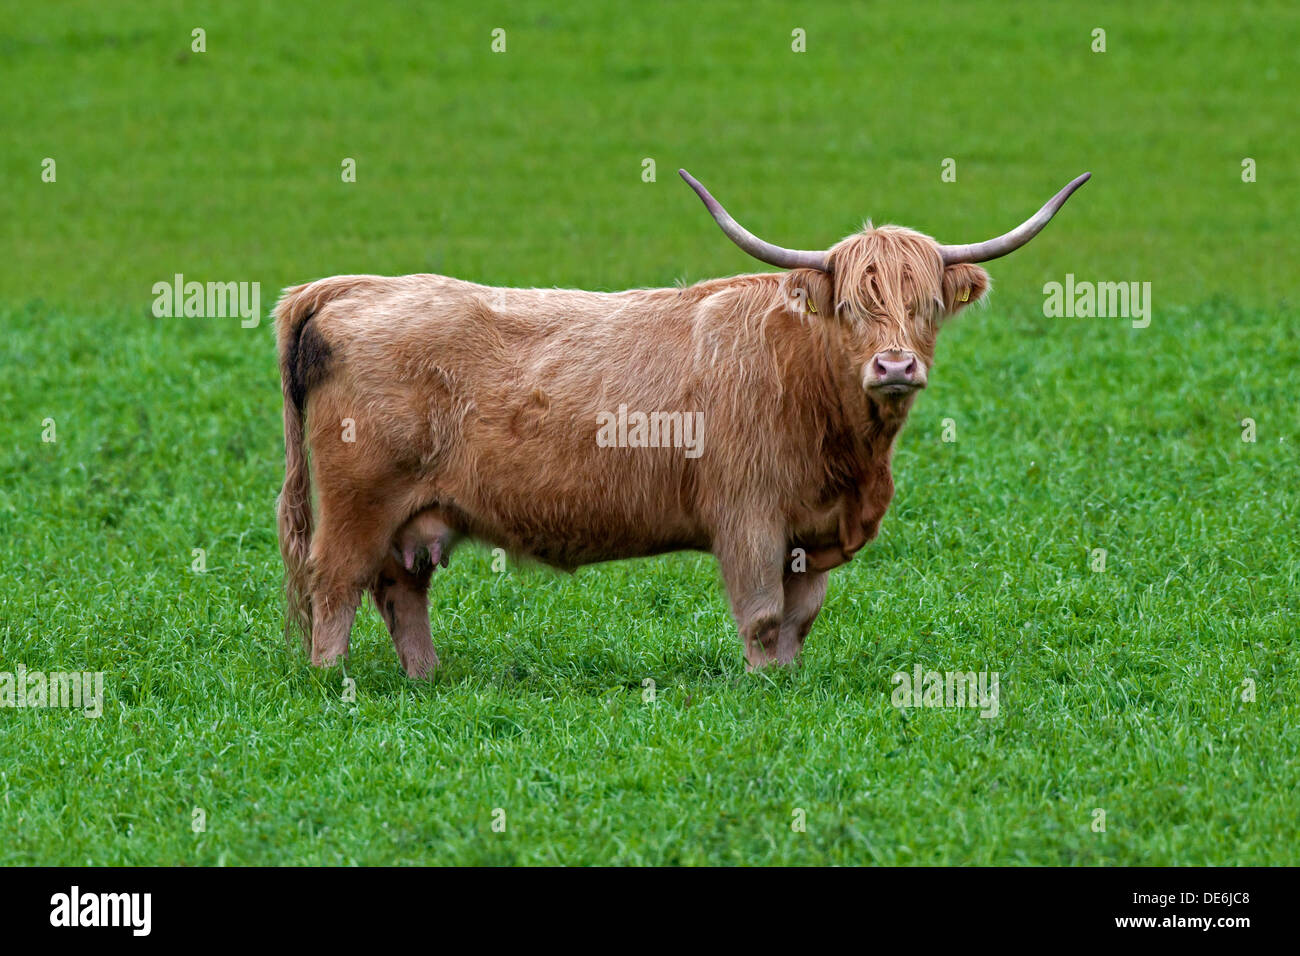 Highland cattle rouge (Bos taurus) avec de grandes cornes de vache dans le pré Banque D'Images